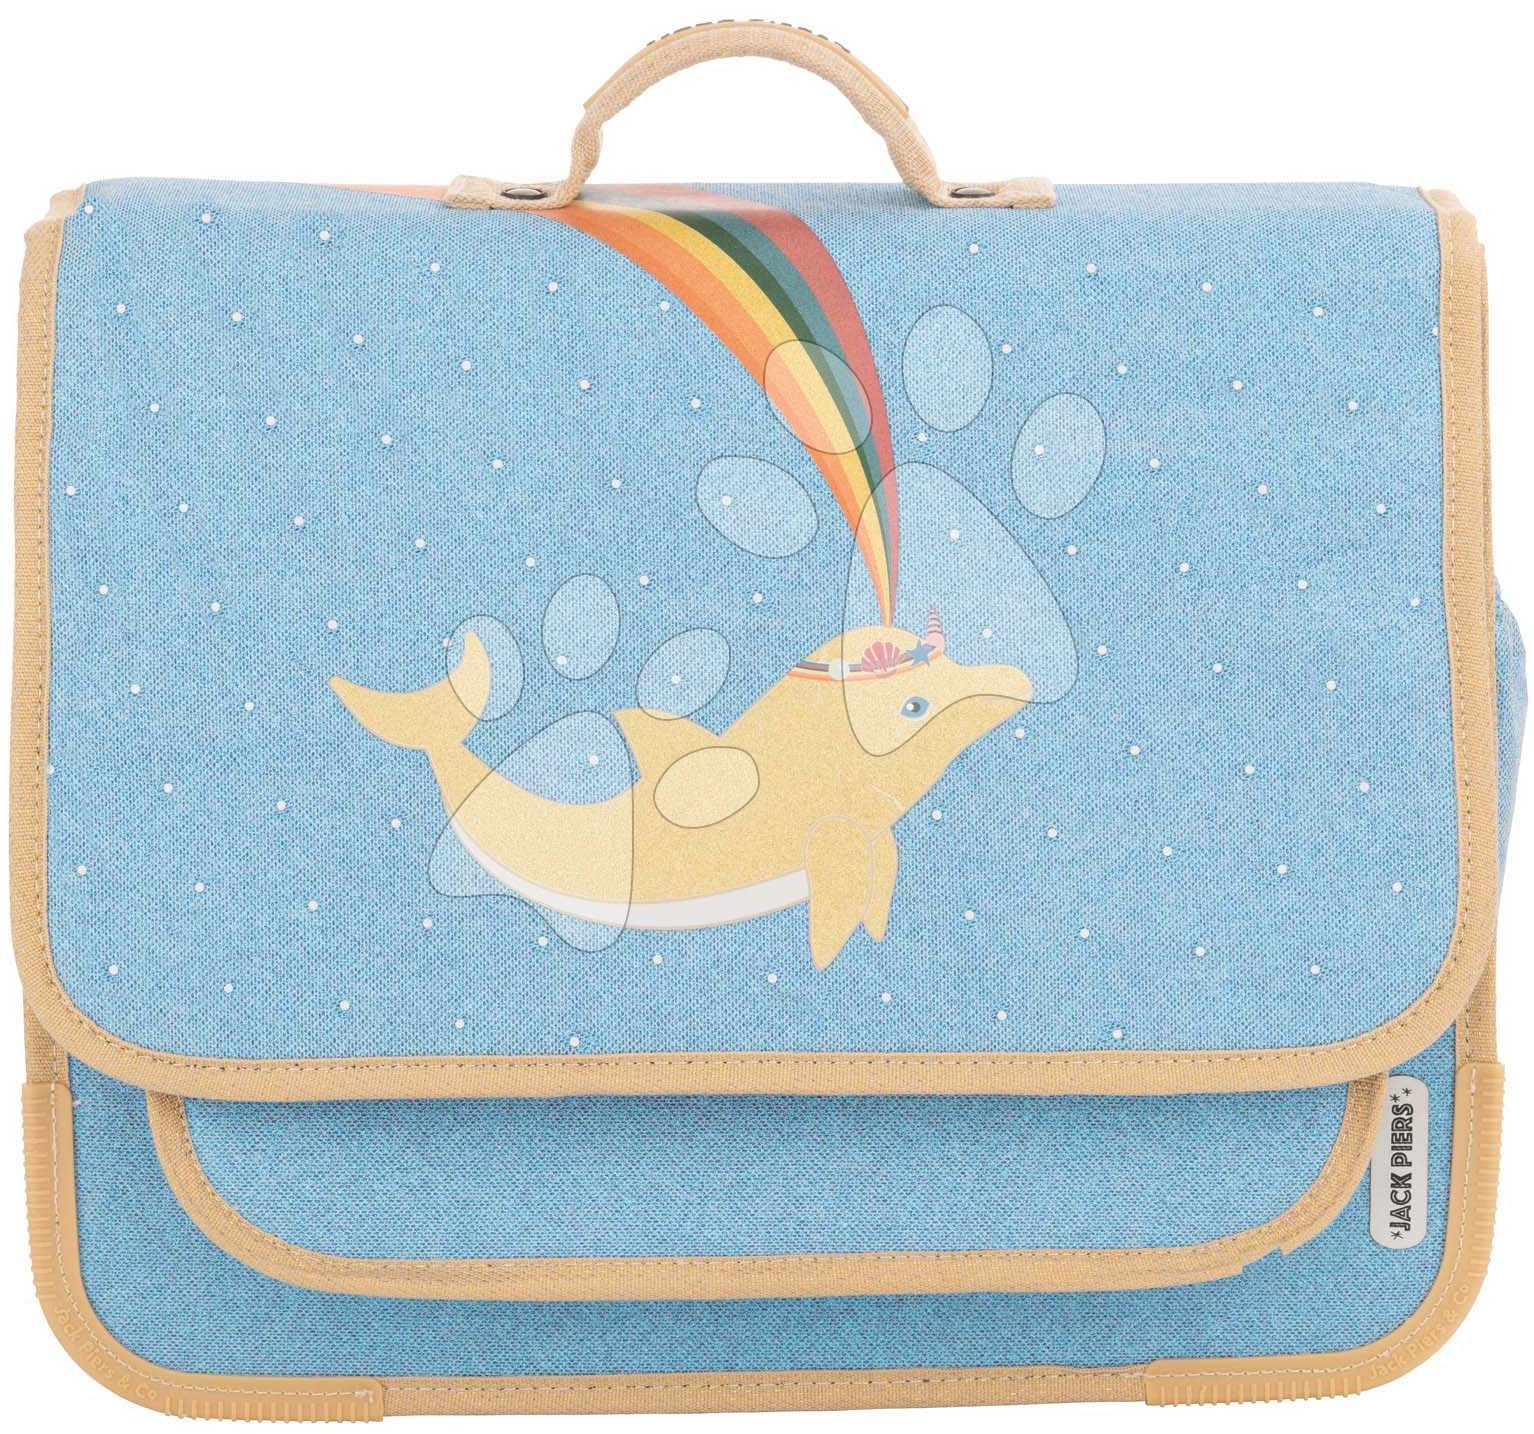 Školní aktovka Schoolbag Paris Large Dolphin Jack Piers ergonomická luxusní provedení od 6 let 38*32*15 cm